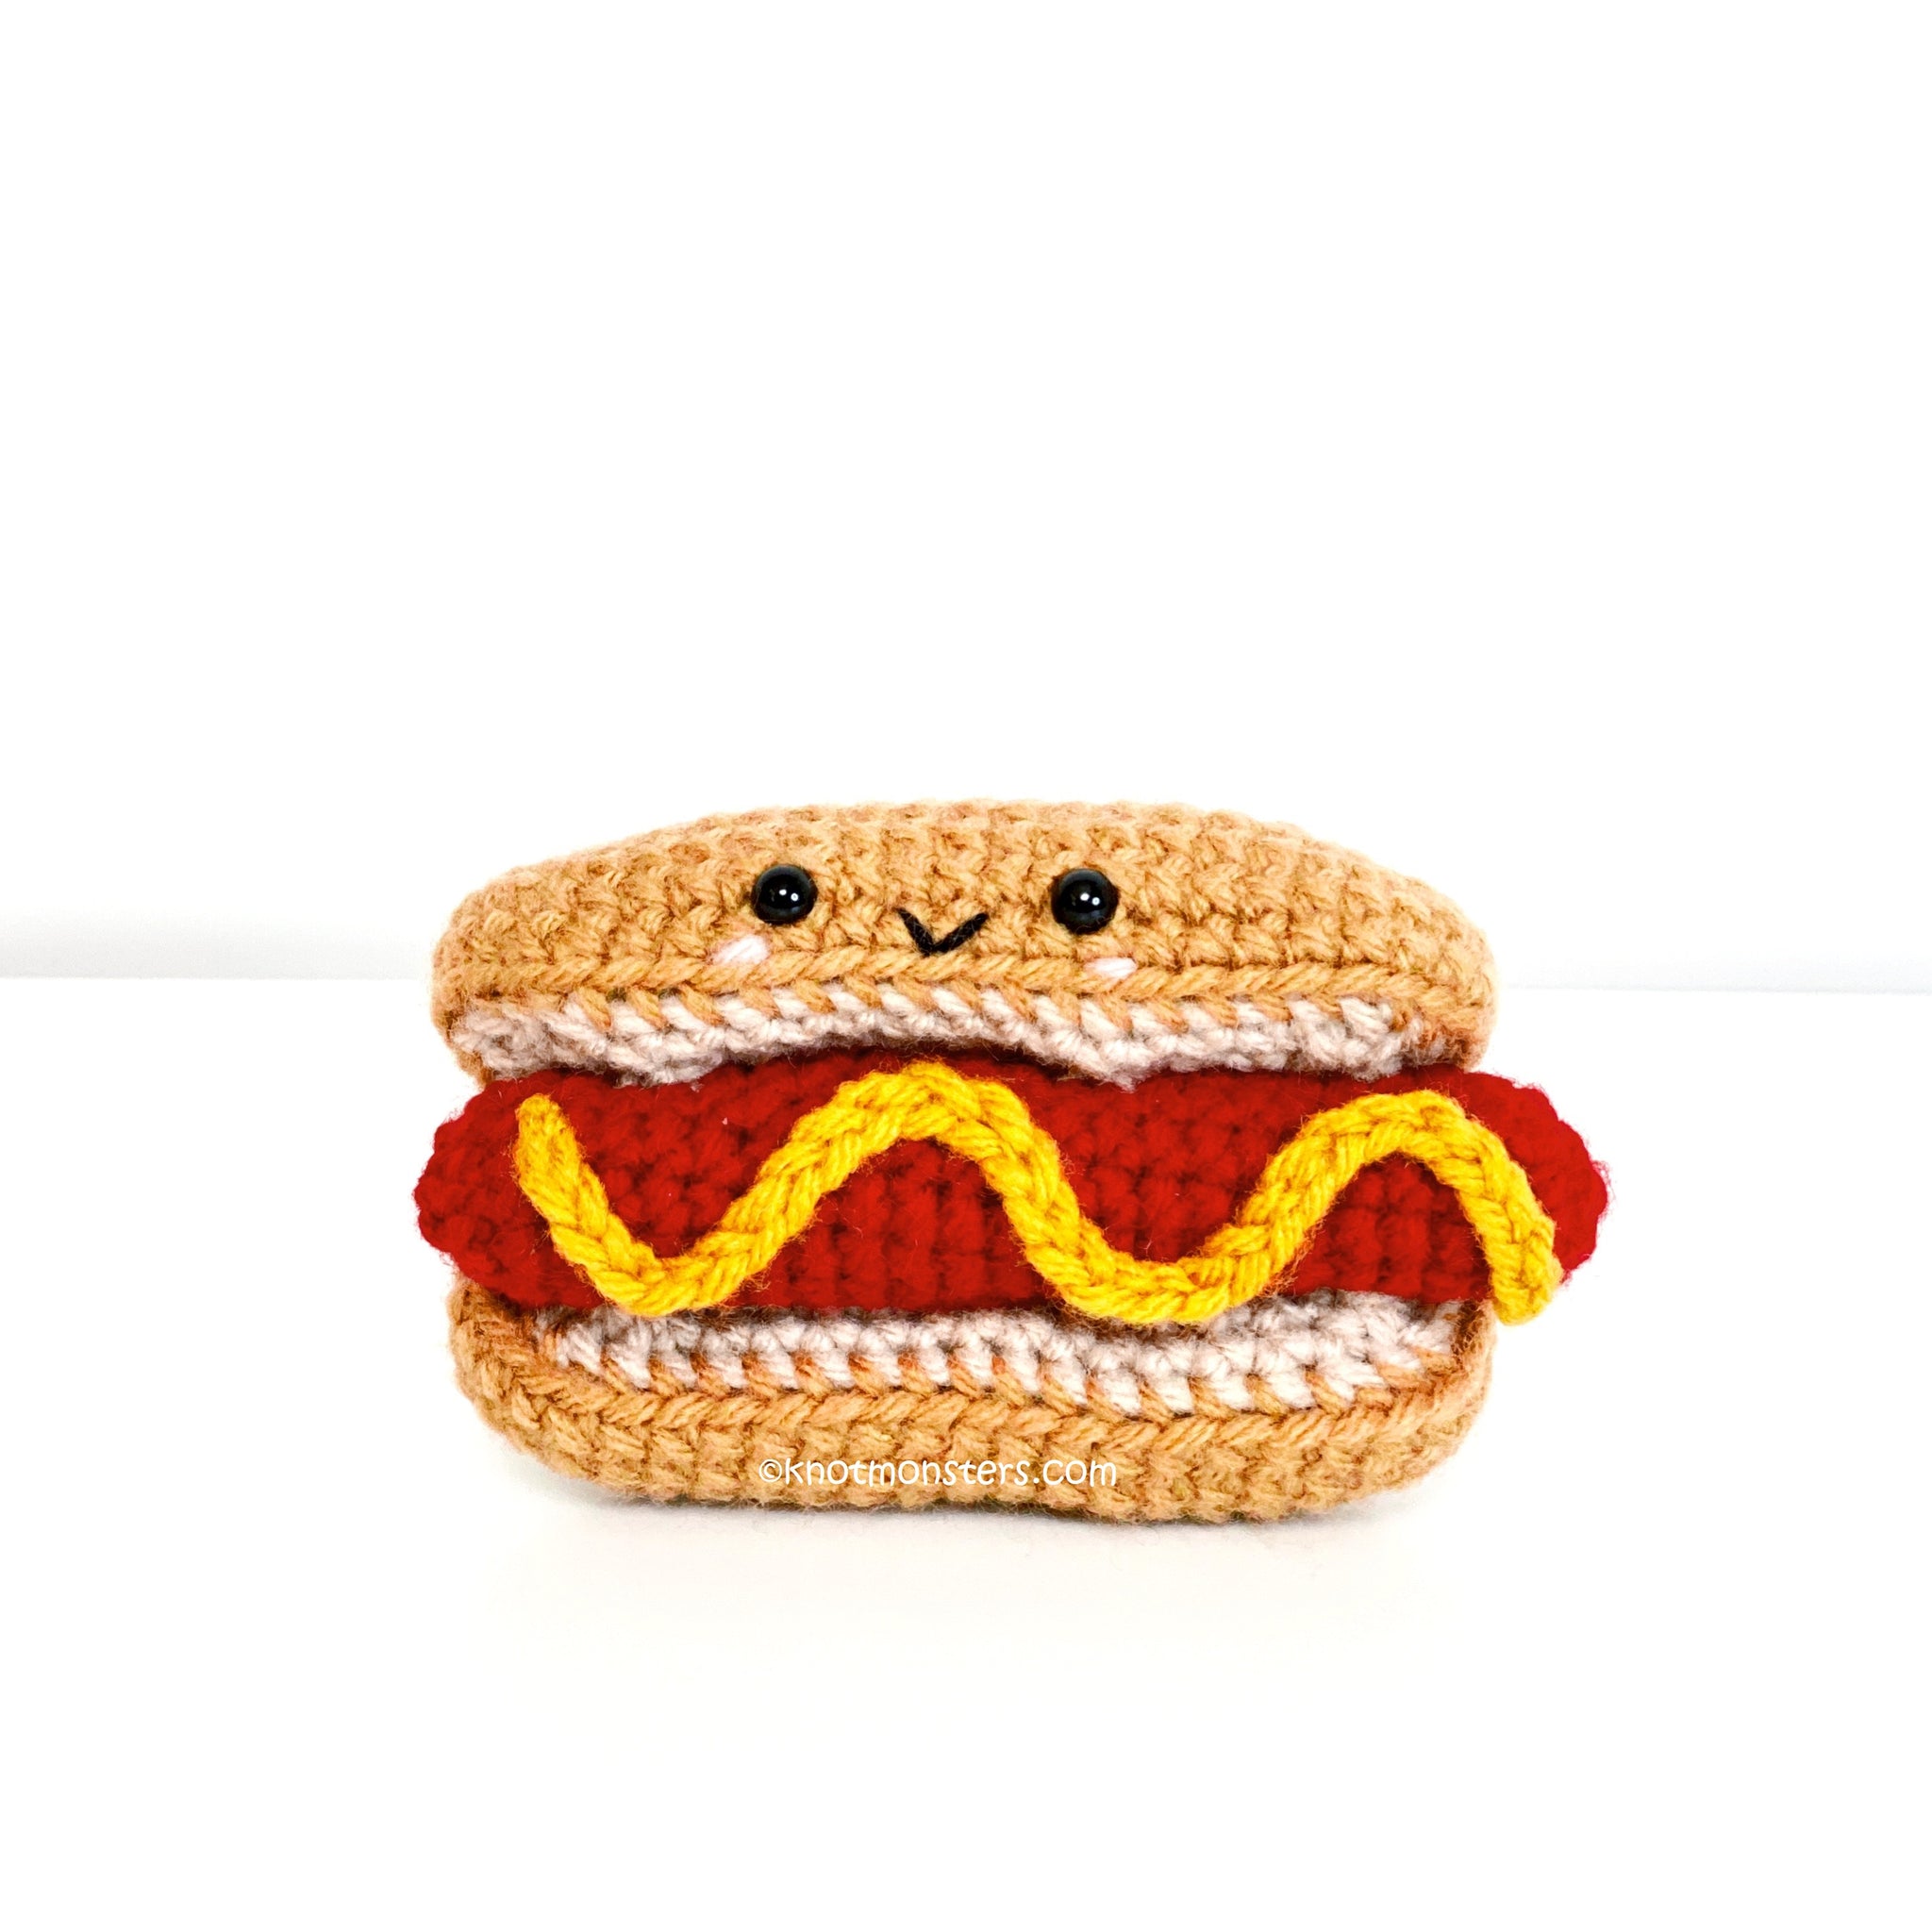 Hotdog - Fast Food (DIGITAL PATTERN)